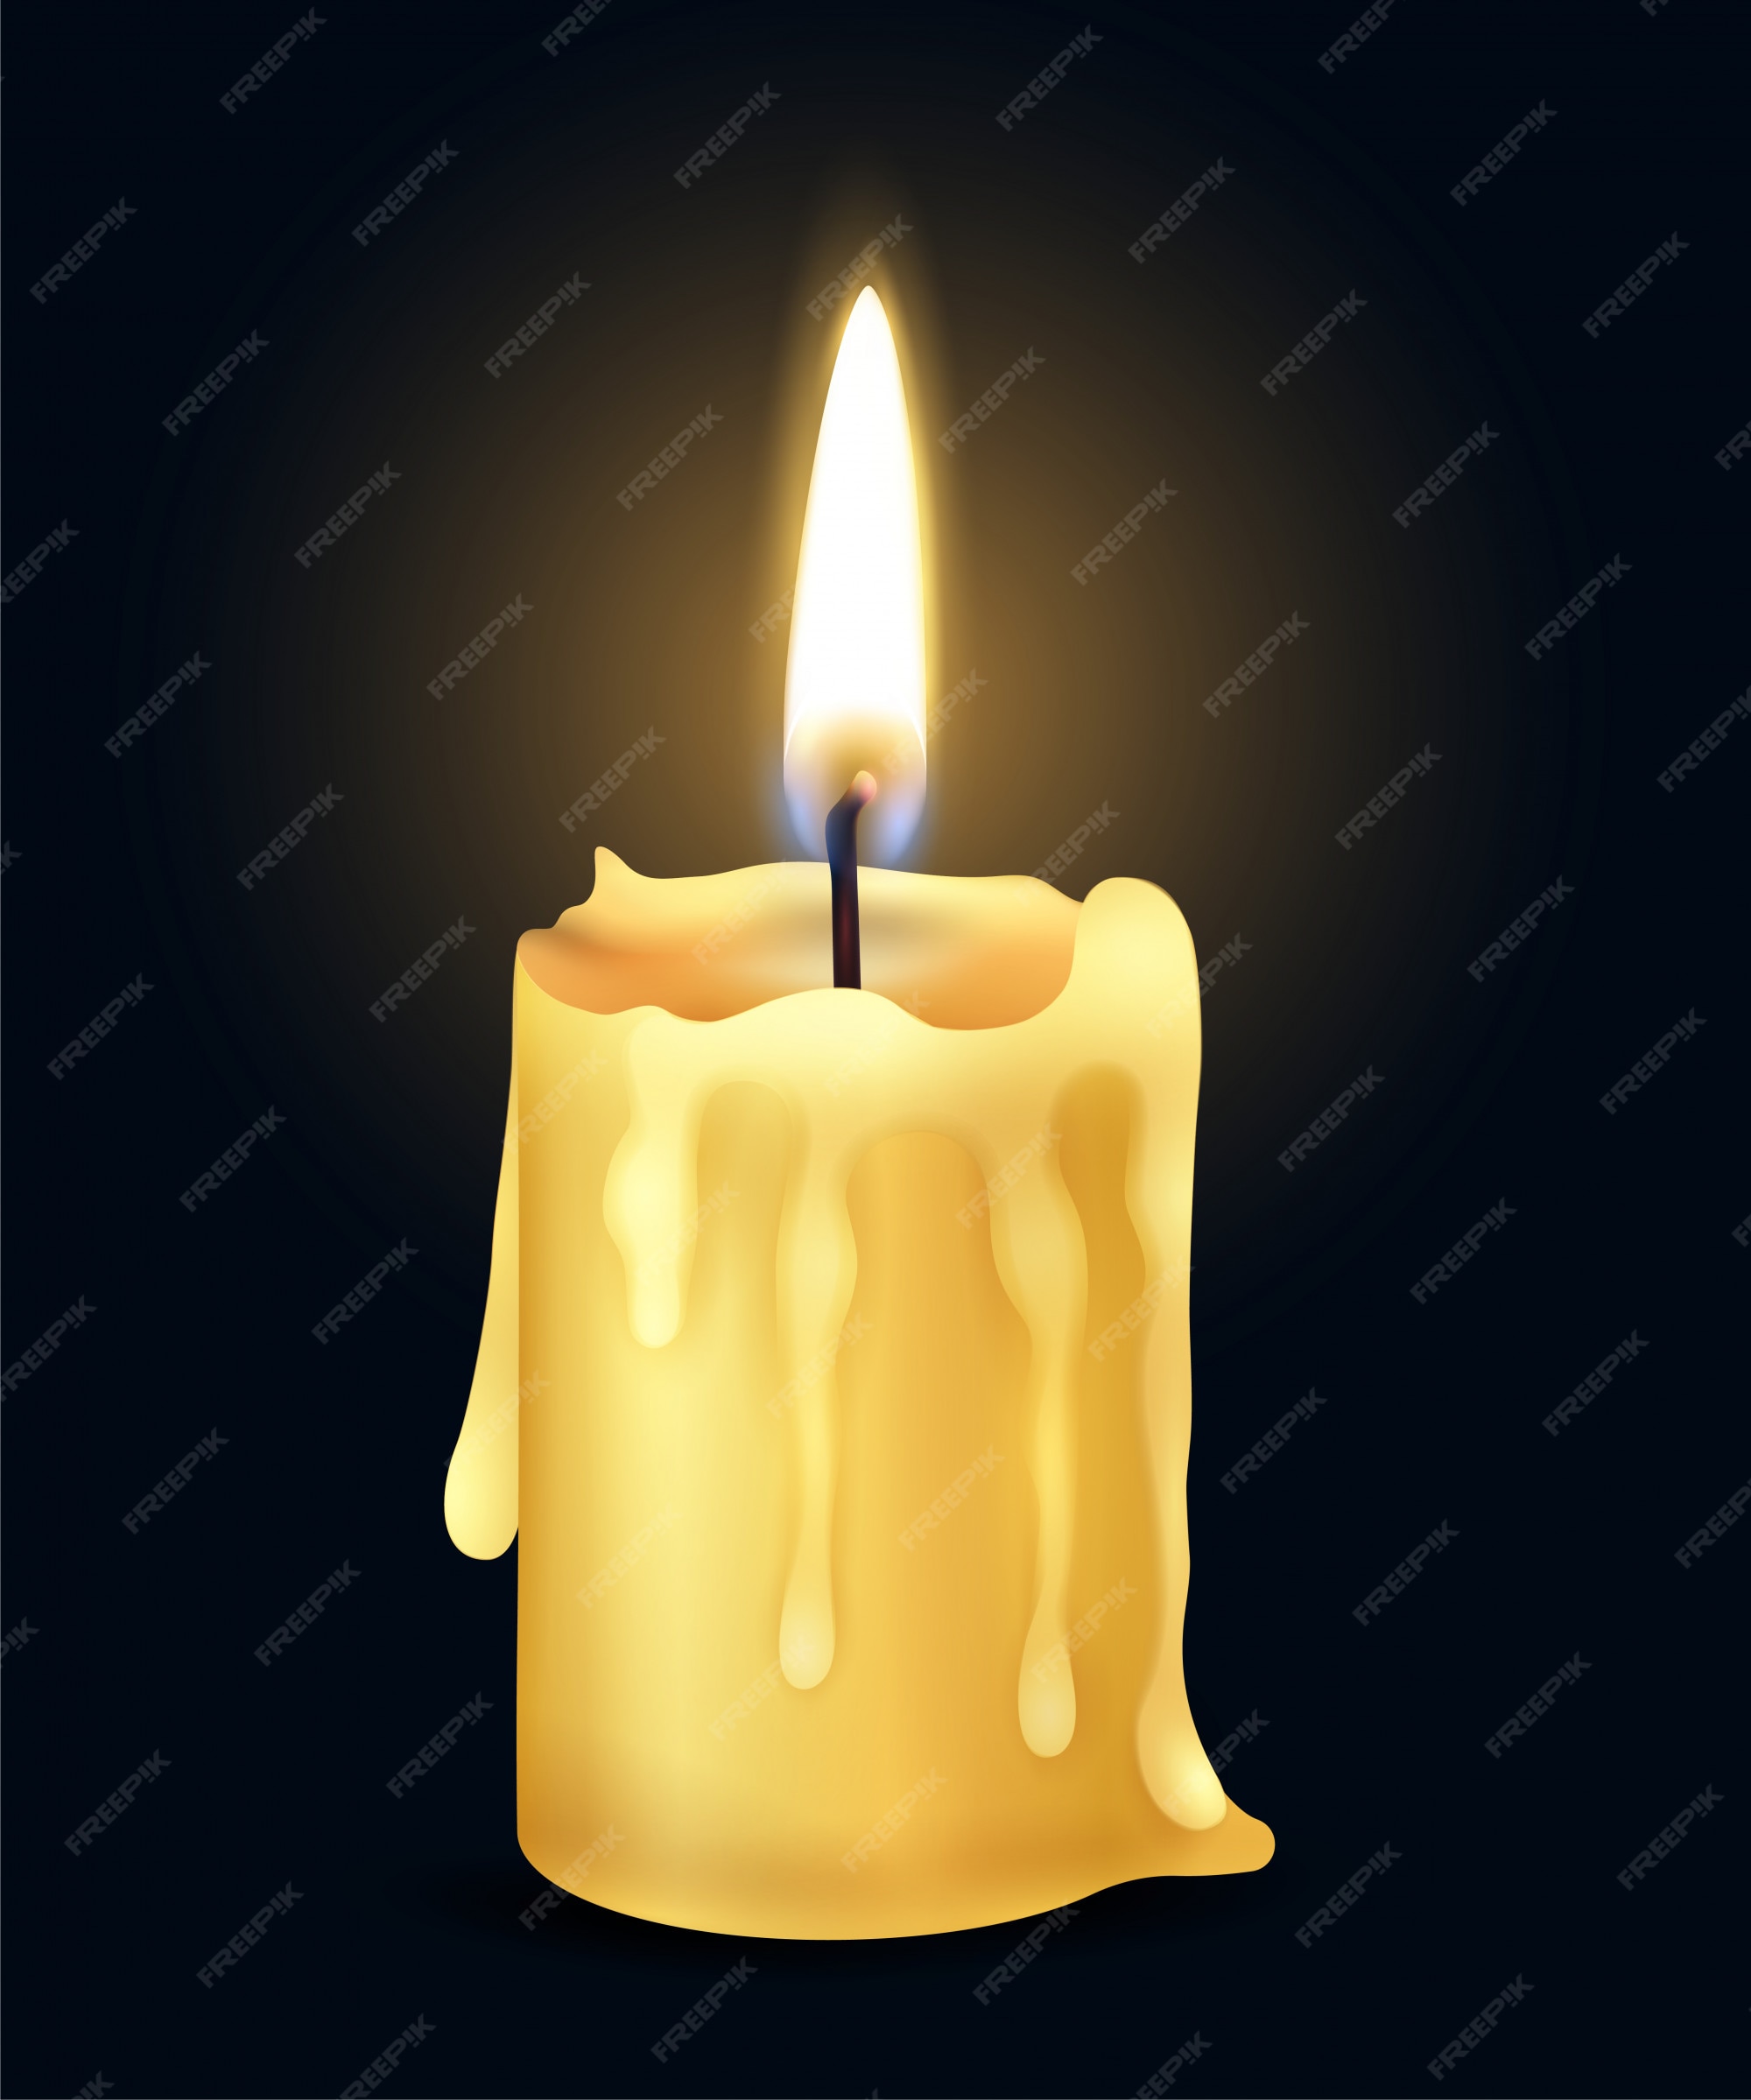 cirujano Fortaleza isla Composición de luz de fuego de llama de vela ardiente realista amarillo  aislado en la ilustración oscura | Vector Gratis